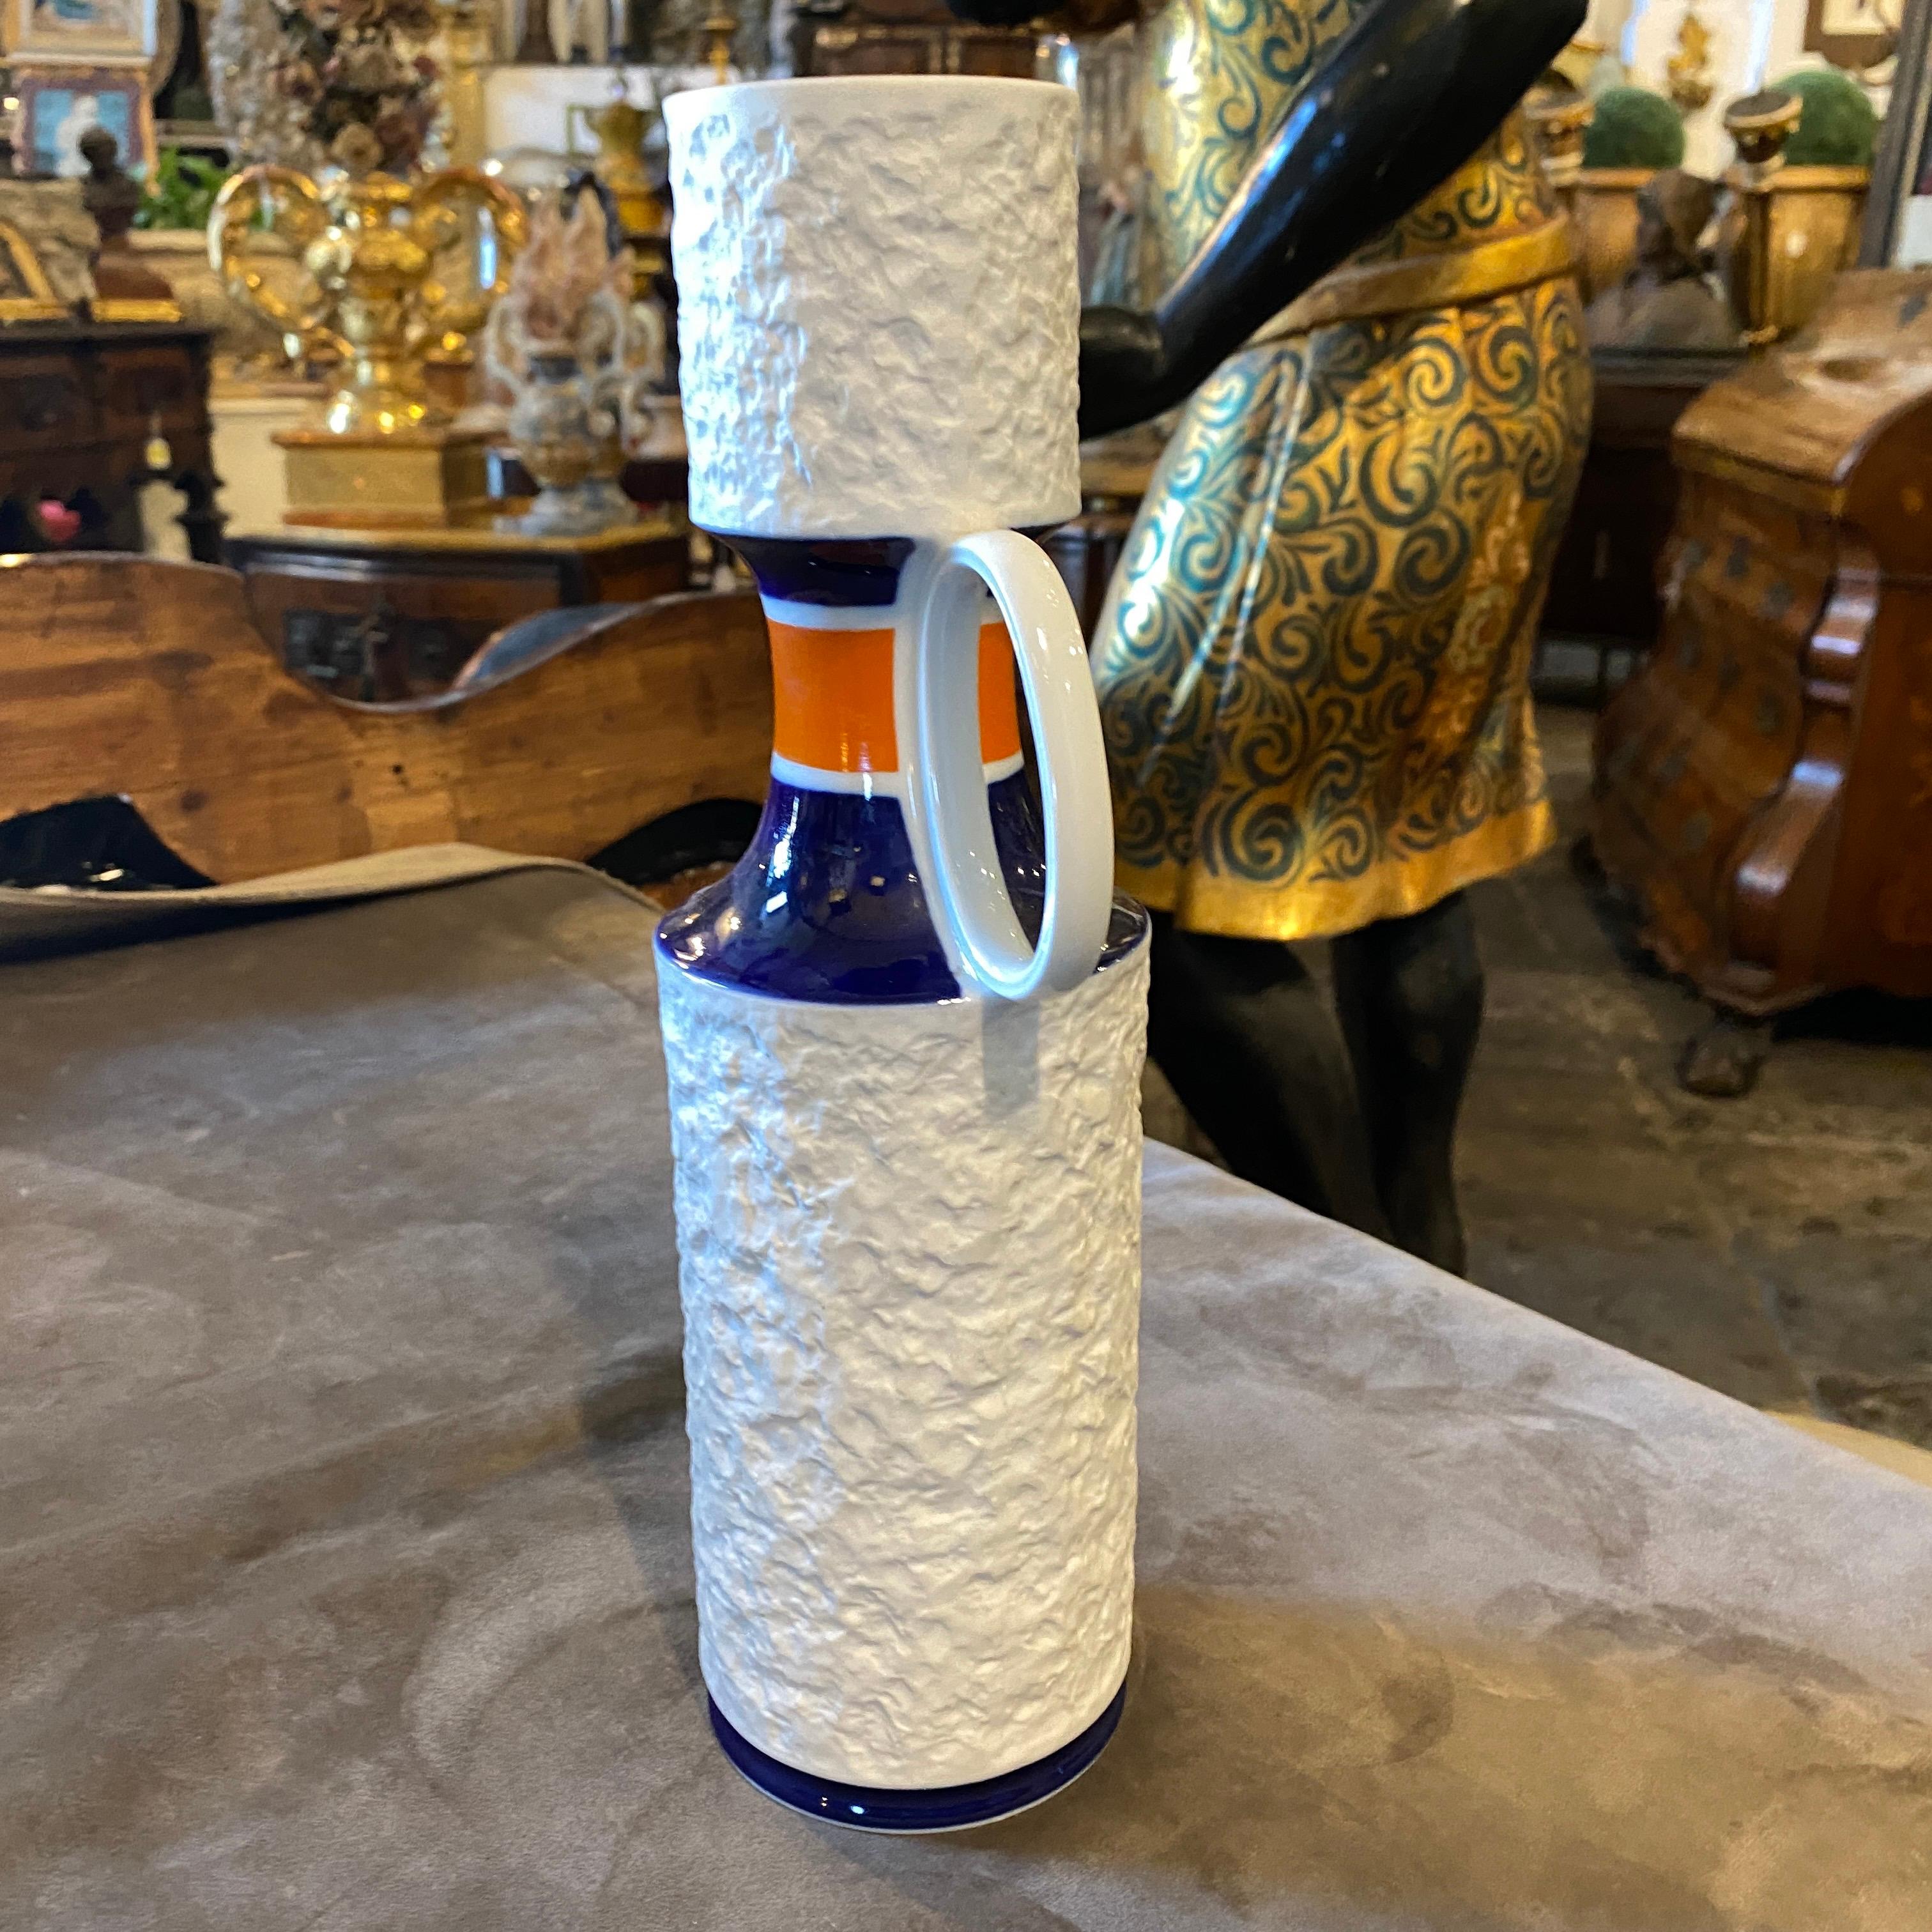 1970s Modernist White Orange and Blue Porcelain German Bottle Vase by K.P.M. For Sale 1